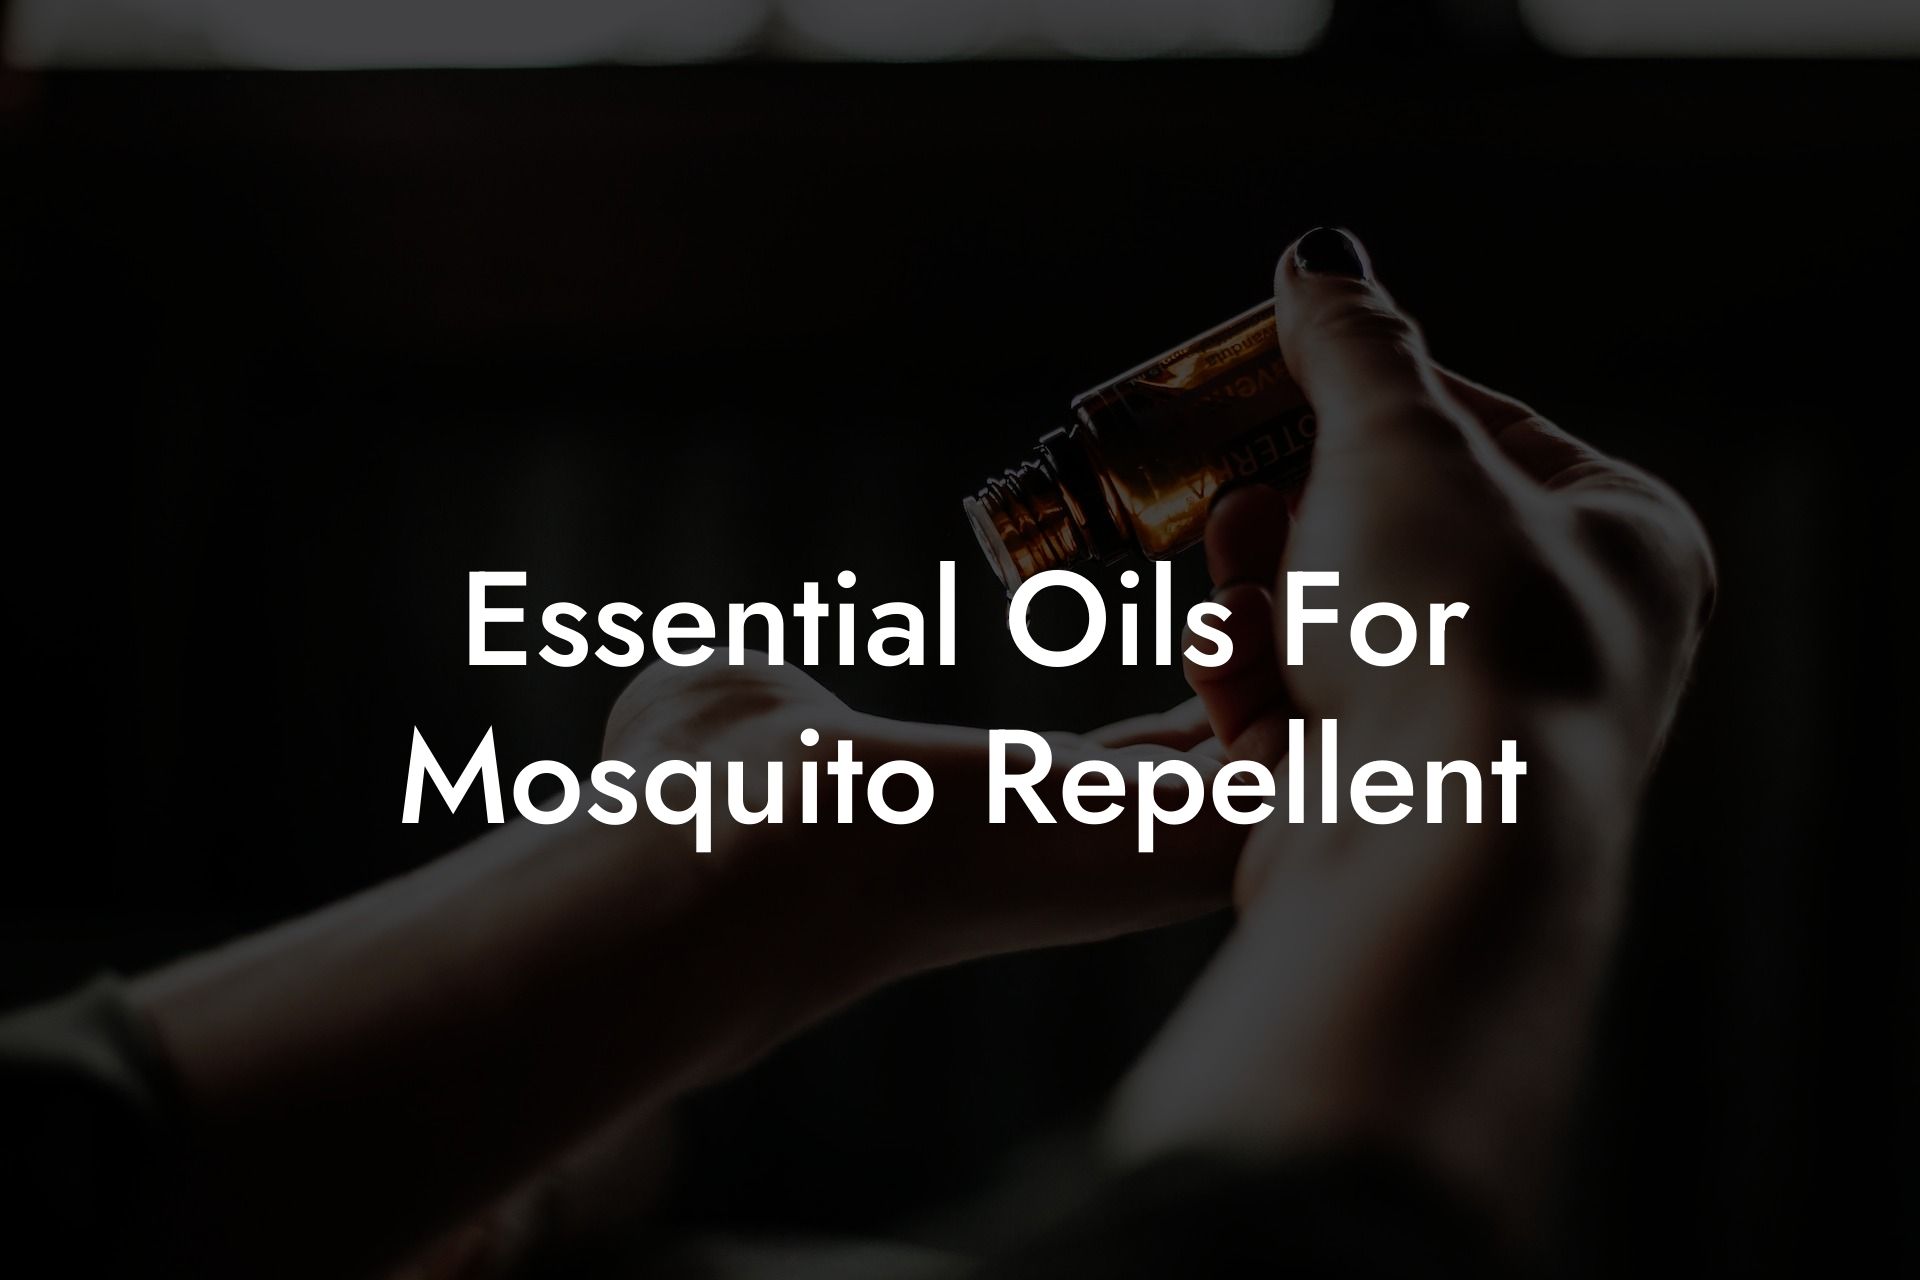 Essential Oils For Mosquito Repellent